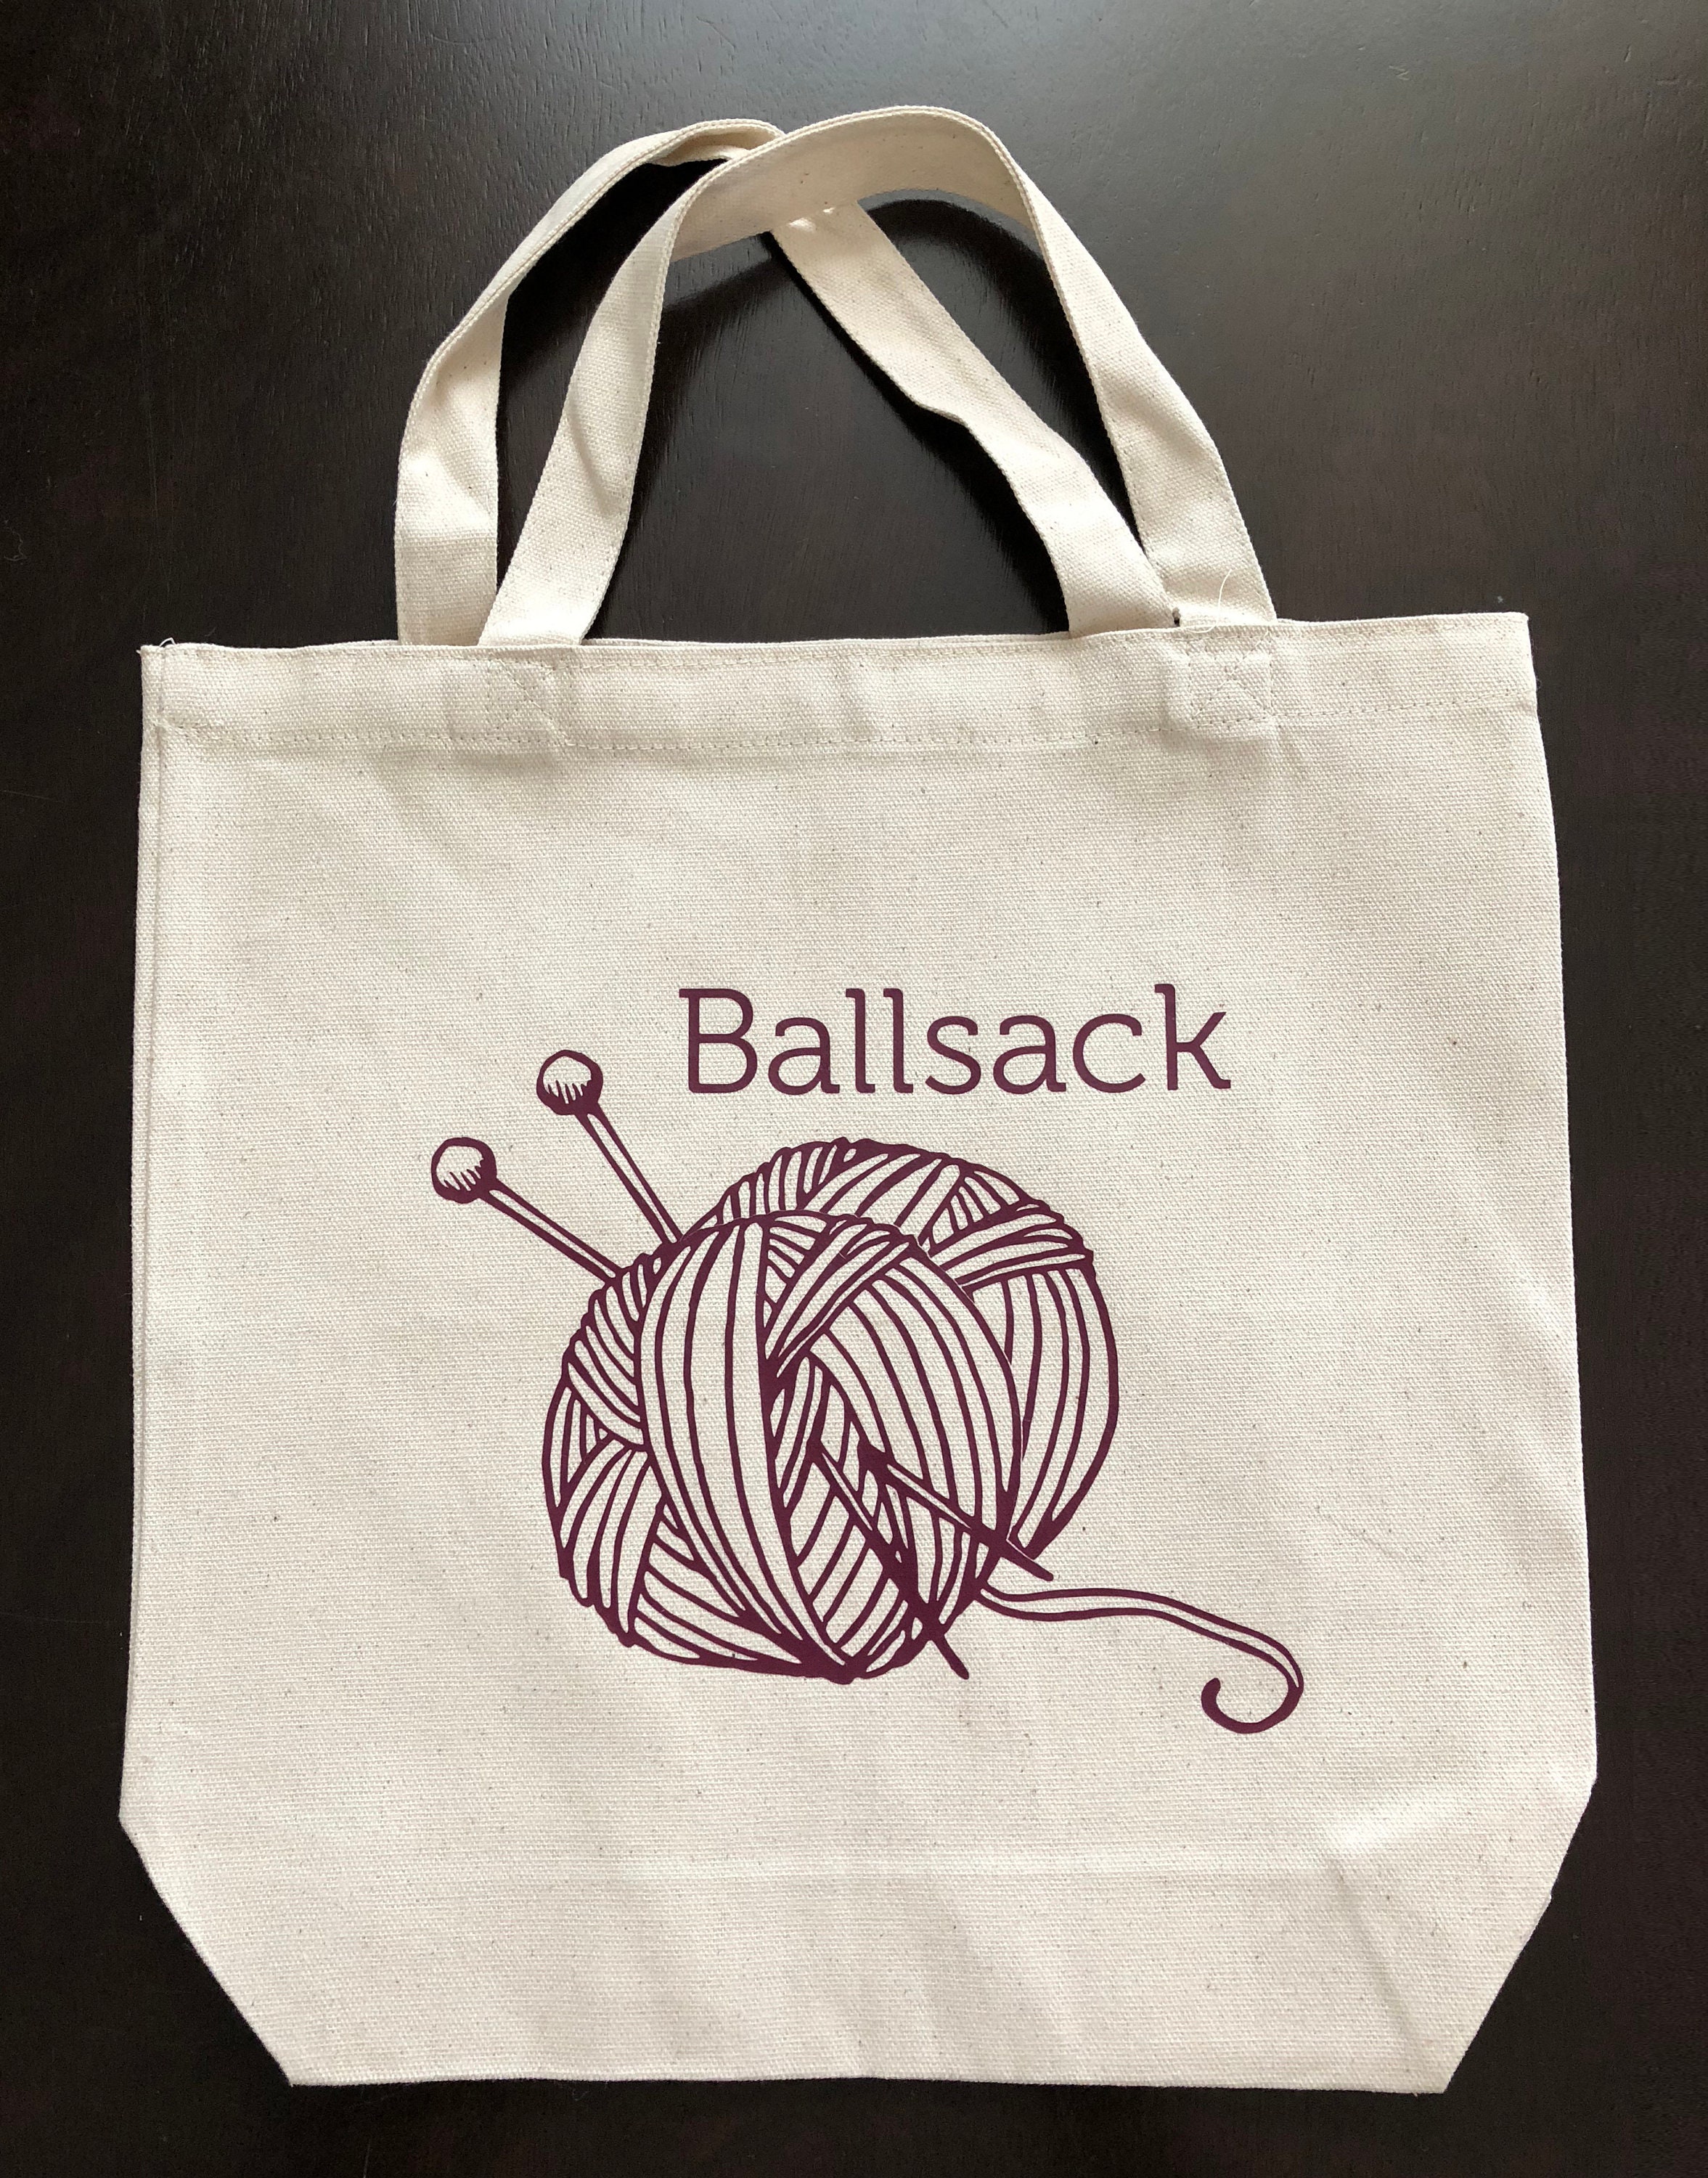 Knitting Bag, Shopping Bag, Canvas Tote Bag, Printed Tote Bag